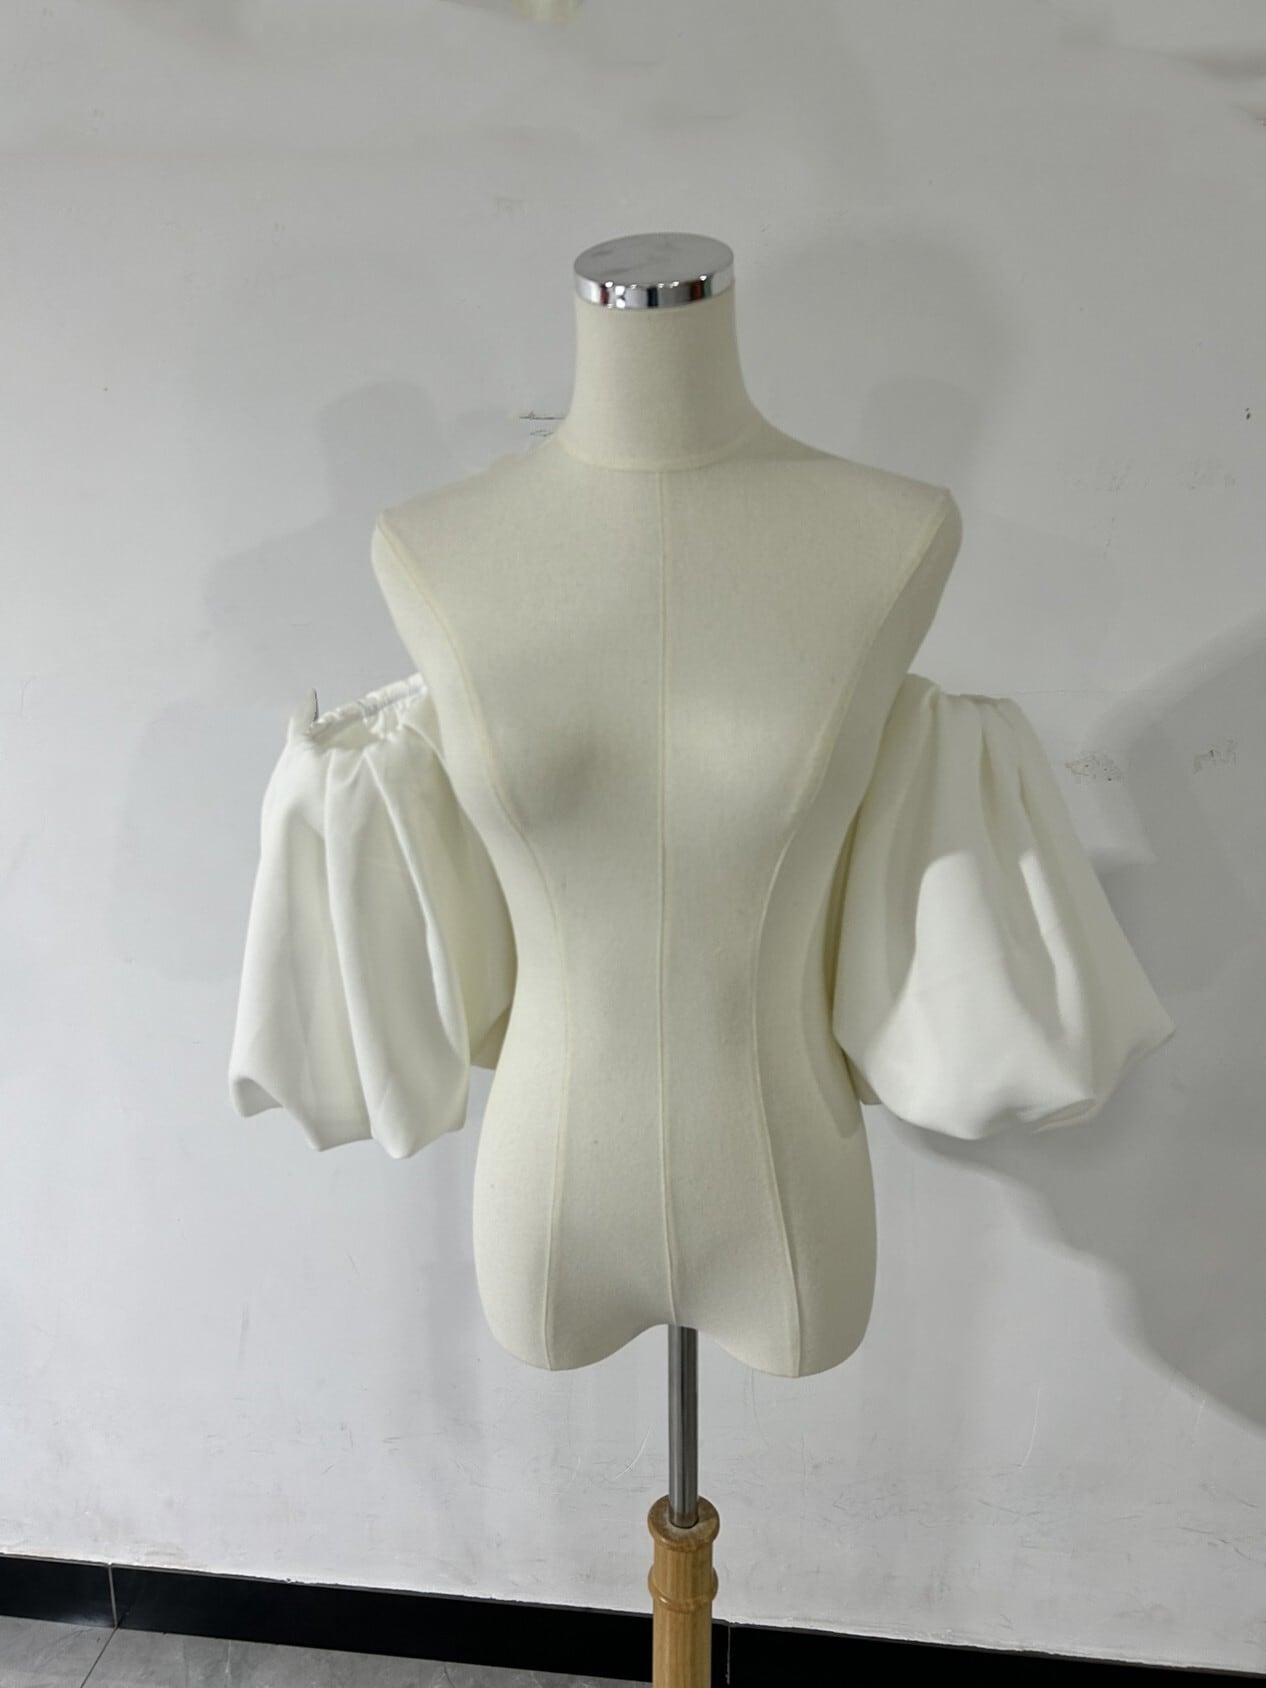 ウェディングドレス大人気上昇 取り外し袖 ホワイト ショルダーの付け袖  三角形 パフスリーブ